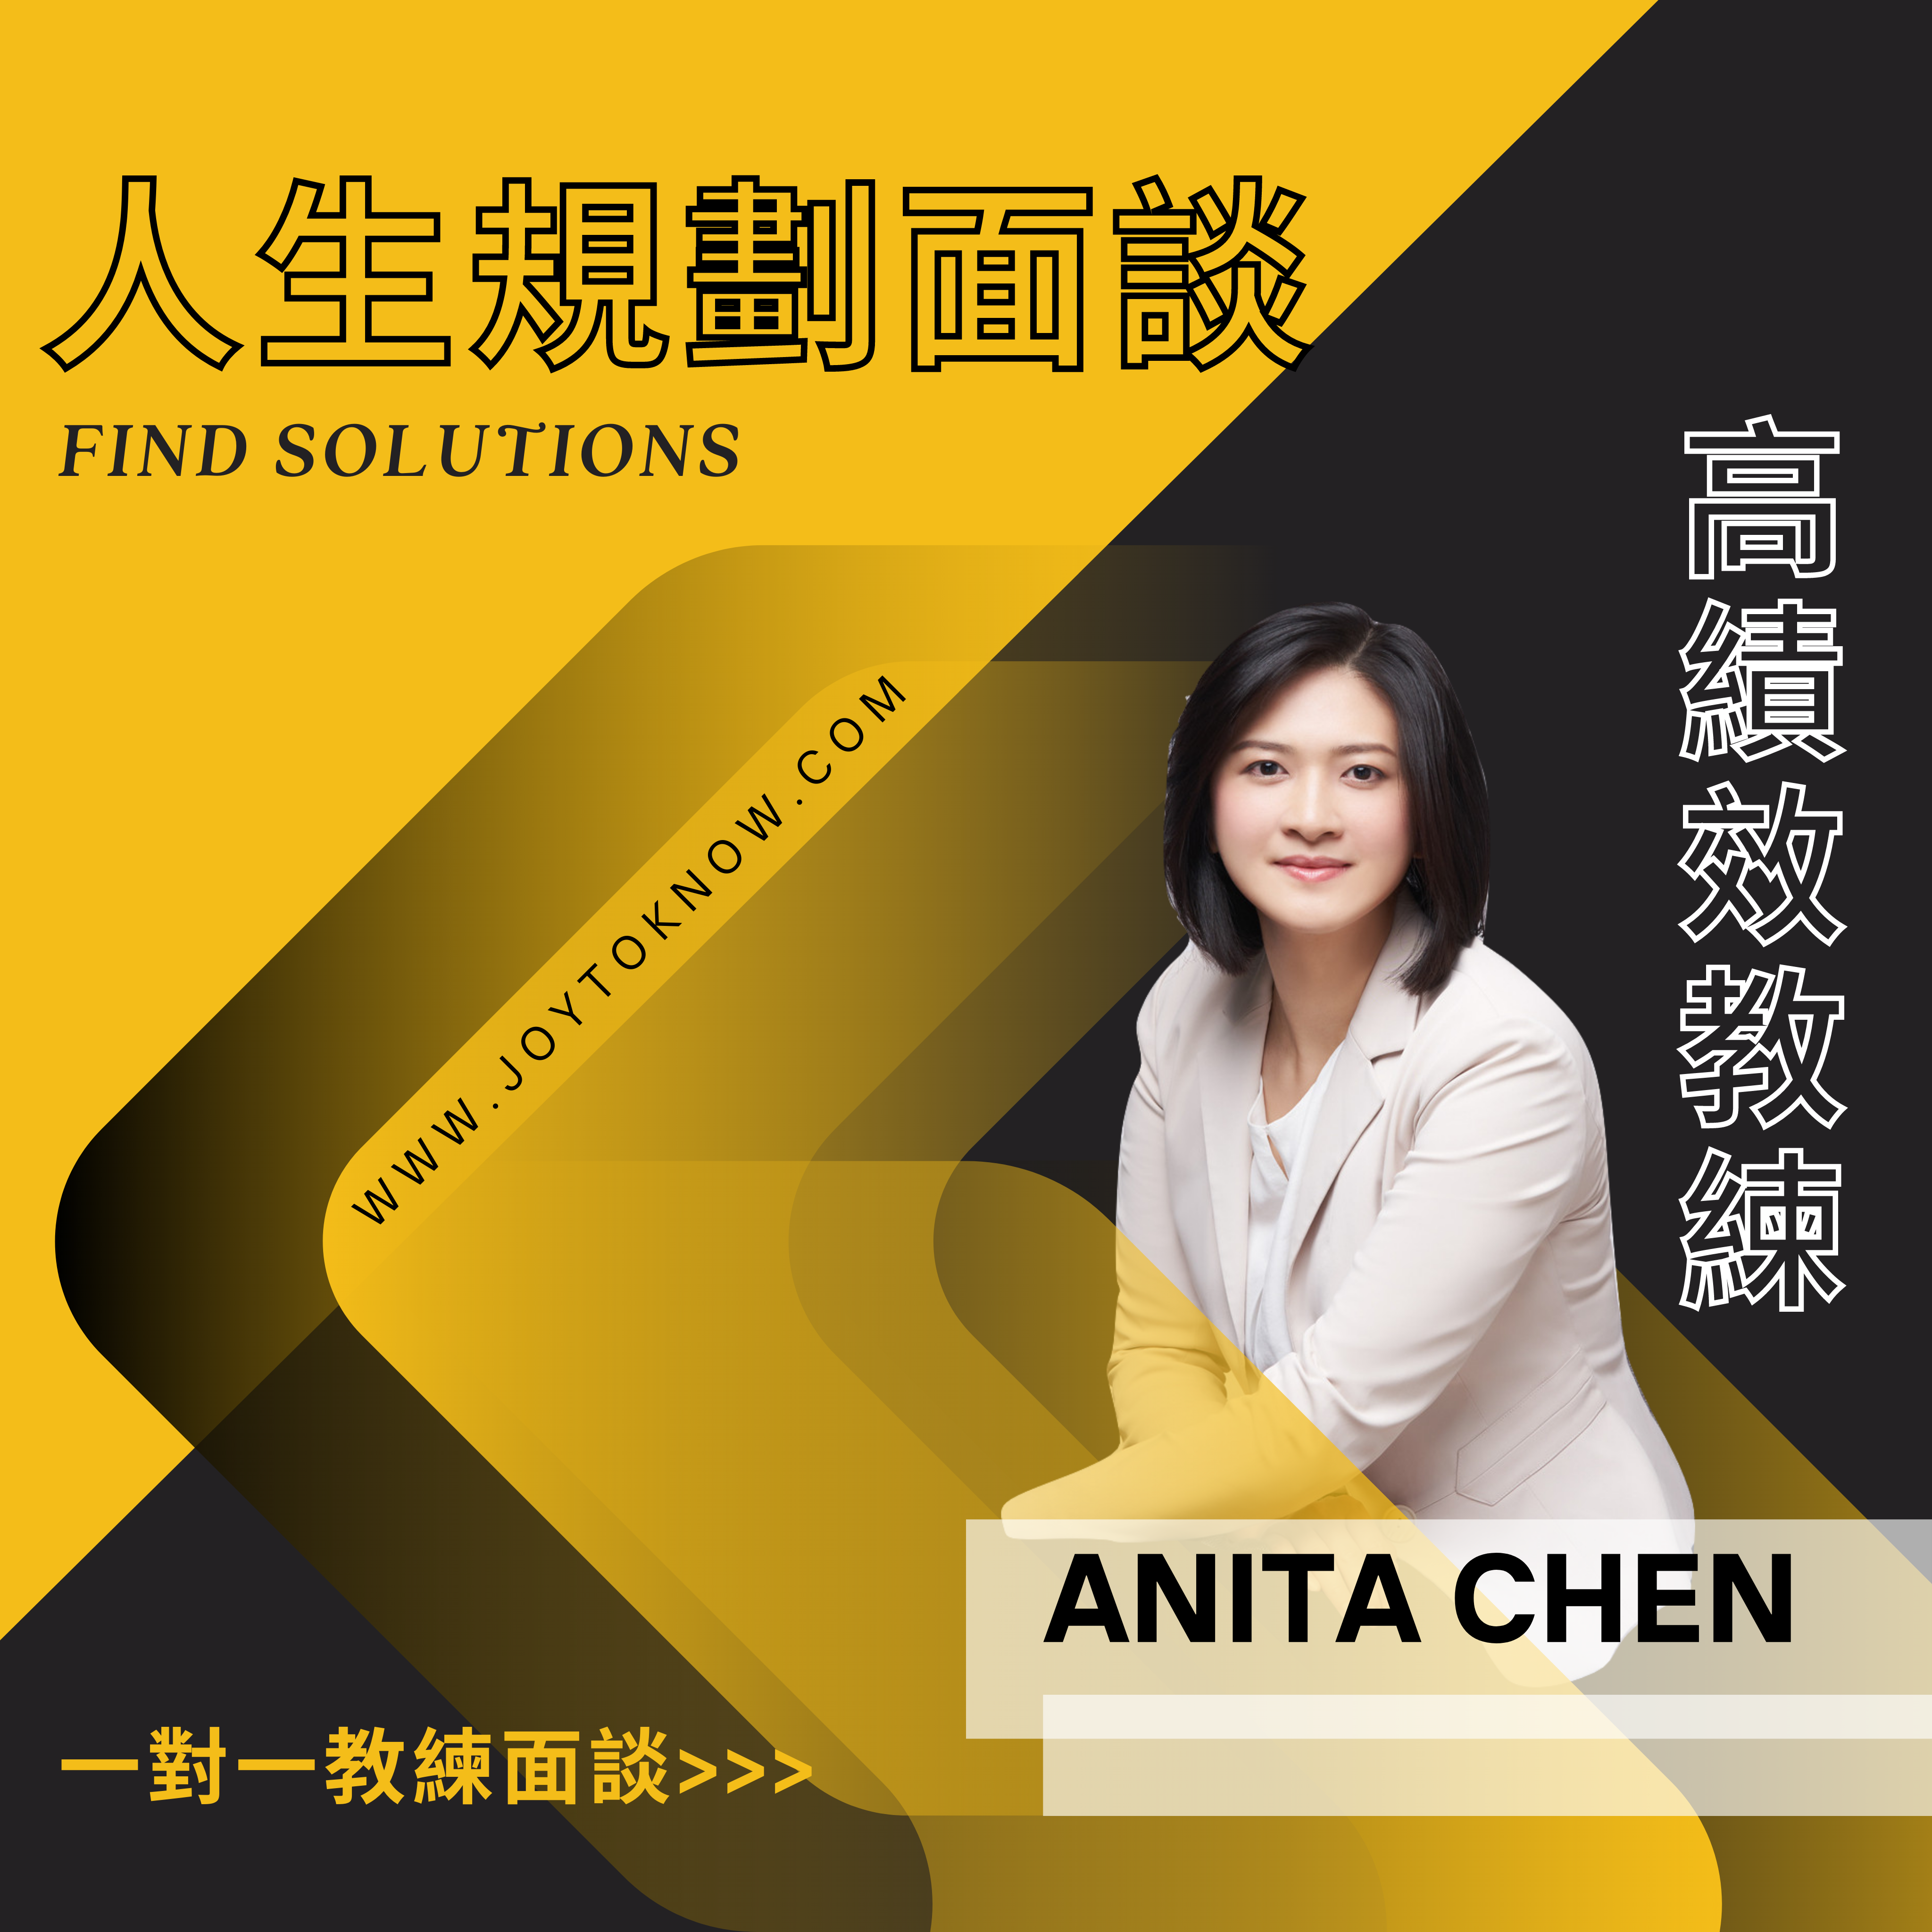 人生規劃面談 Findsolutions 高績效教練 Anita Chen 一對一教練面談